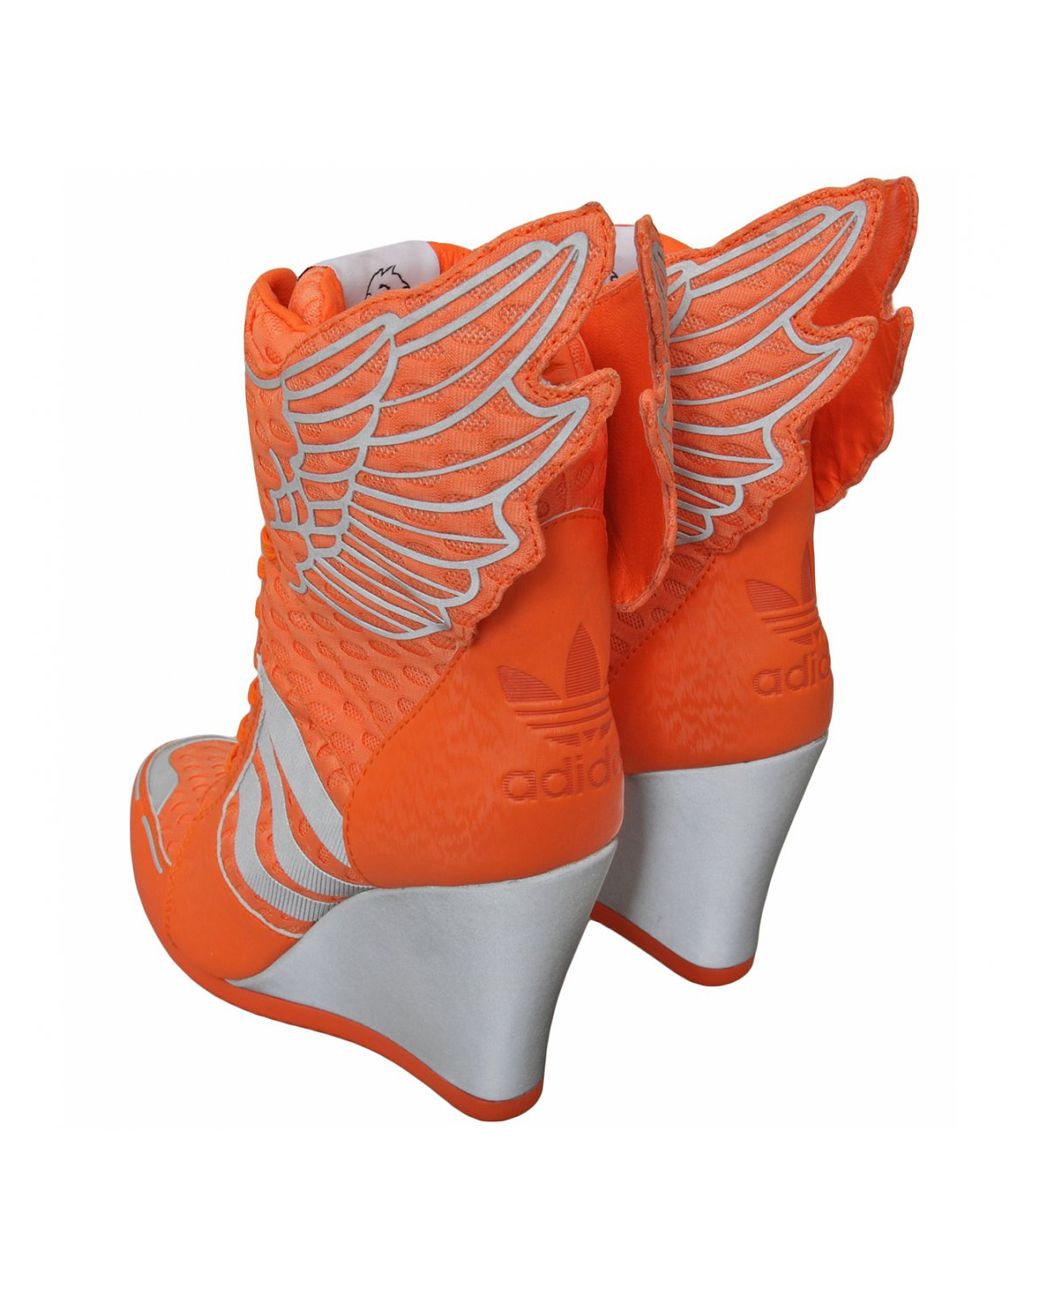 Jeremy Scott for adidas Athletic Wings Wedge Orange | Lyst UK